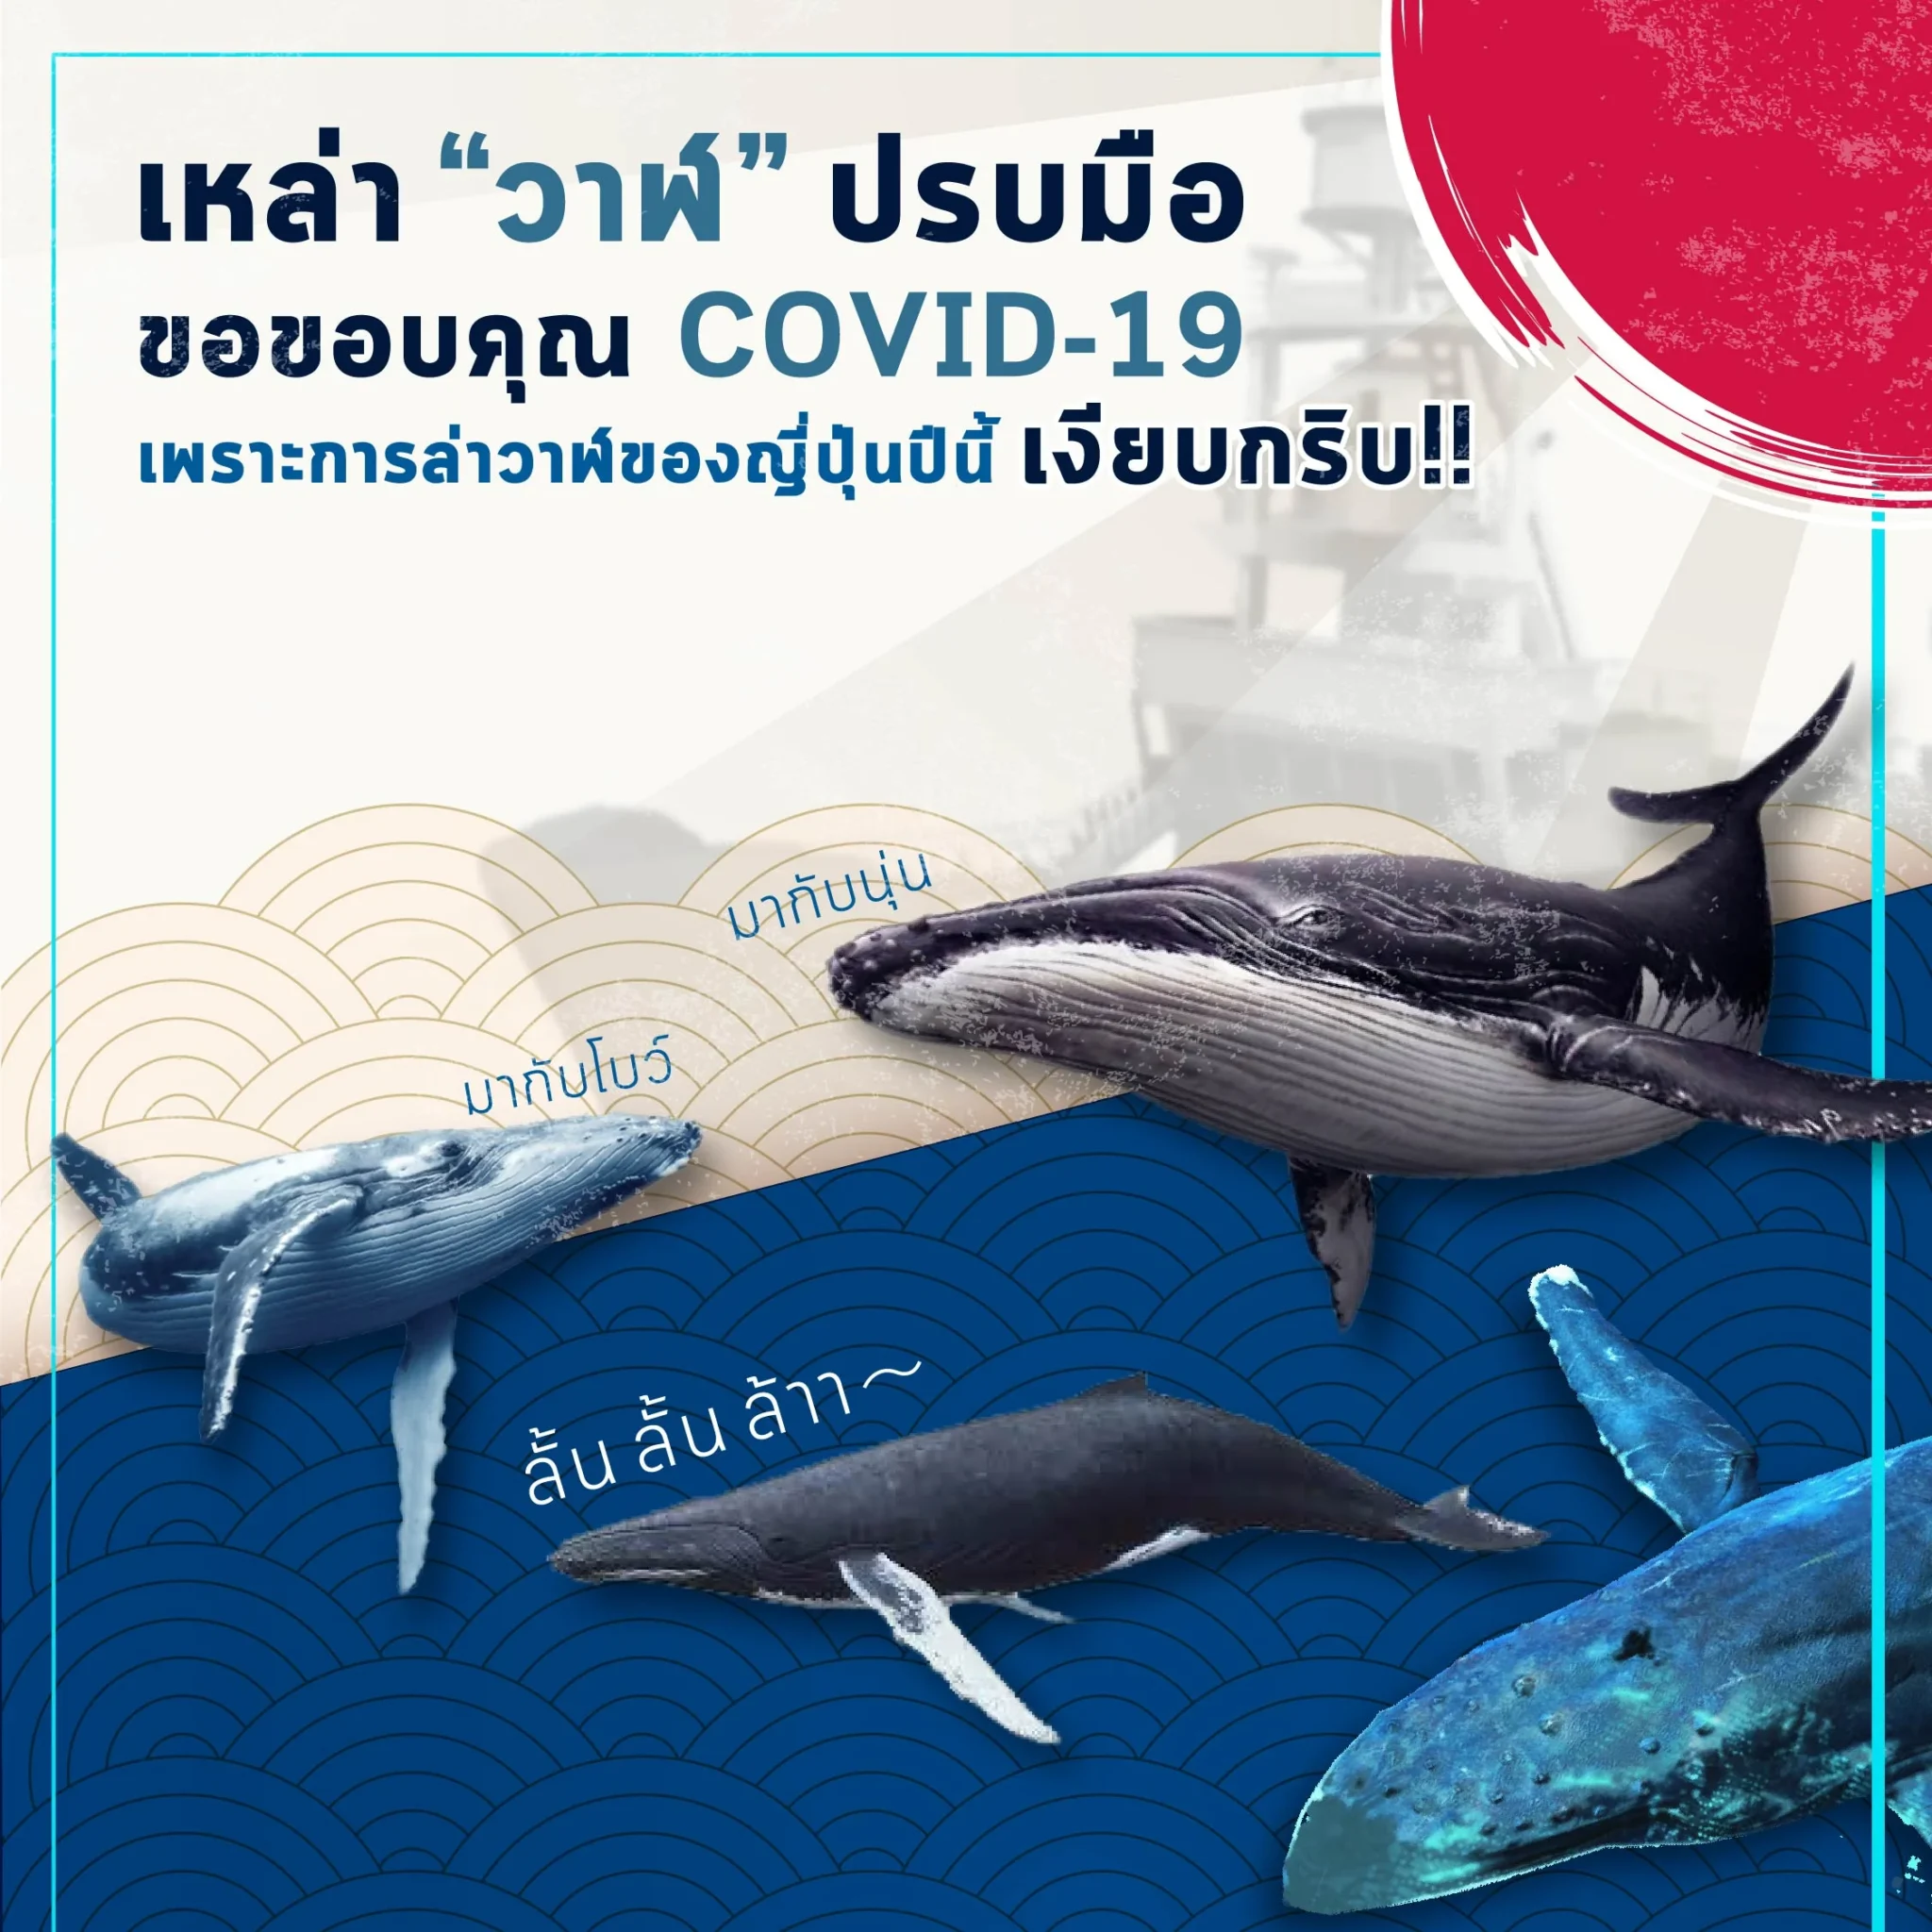 เหล่า “วาฬ” ขอขอบคุณ COVID-19 เพราะล่าวาฬของญี่ปุ่นปีนี้ เงียบกริบ!!